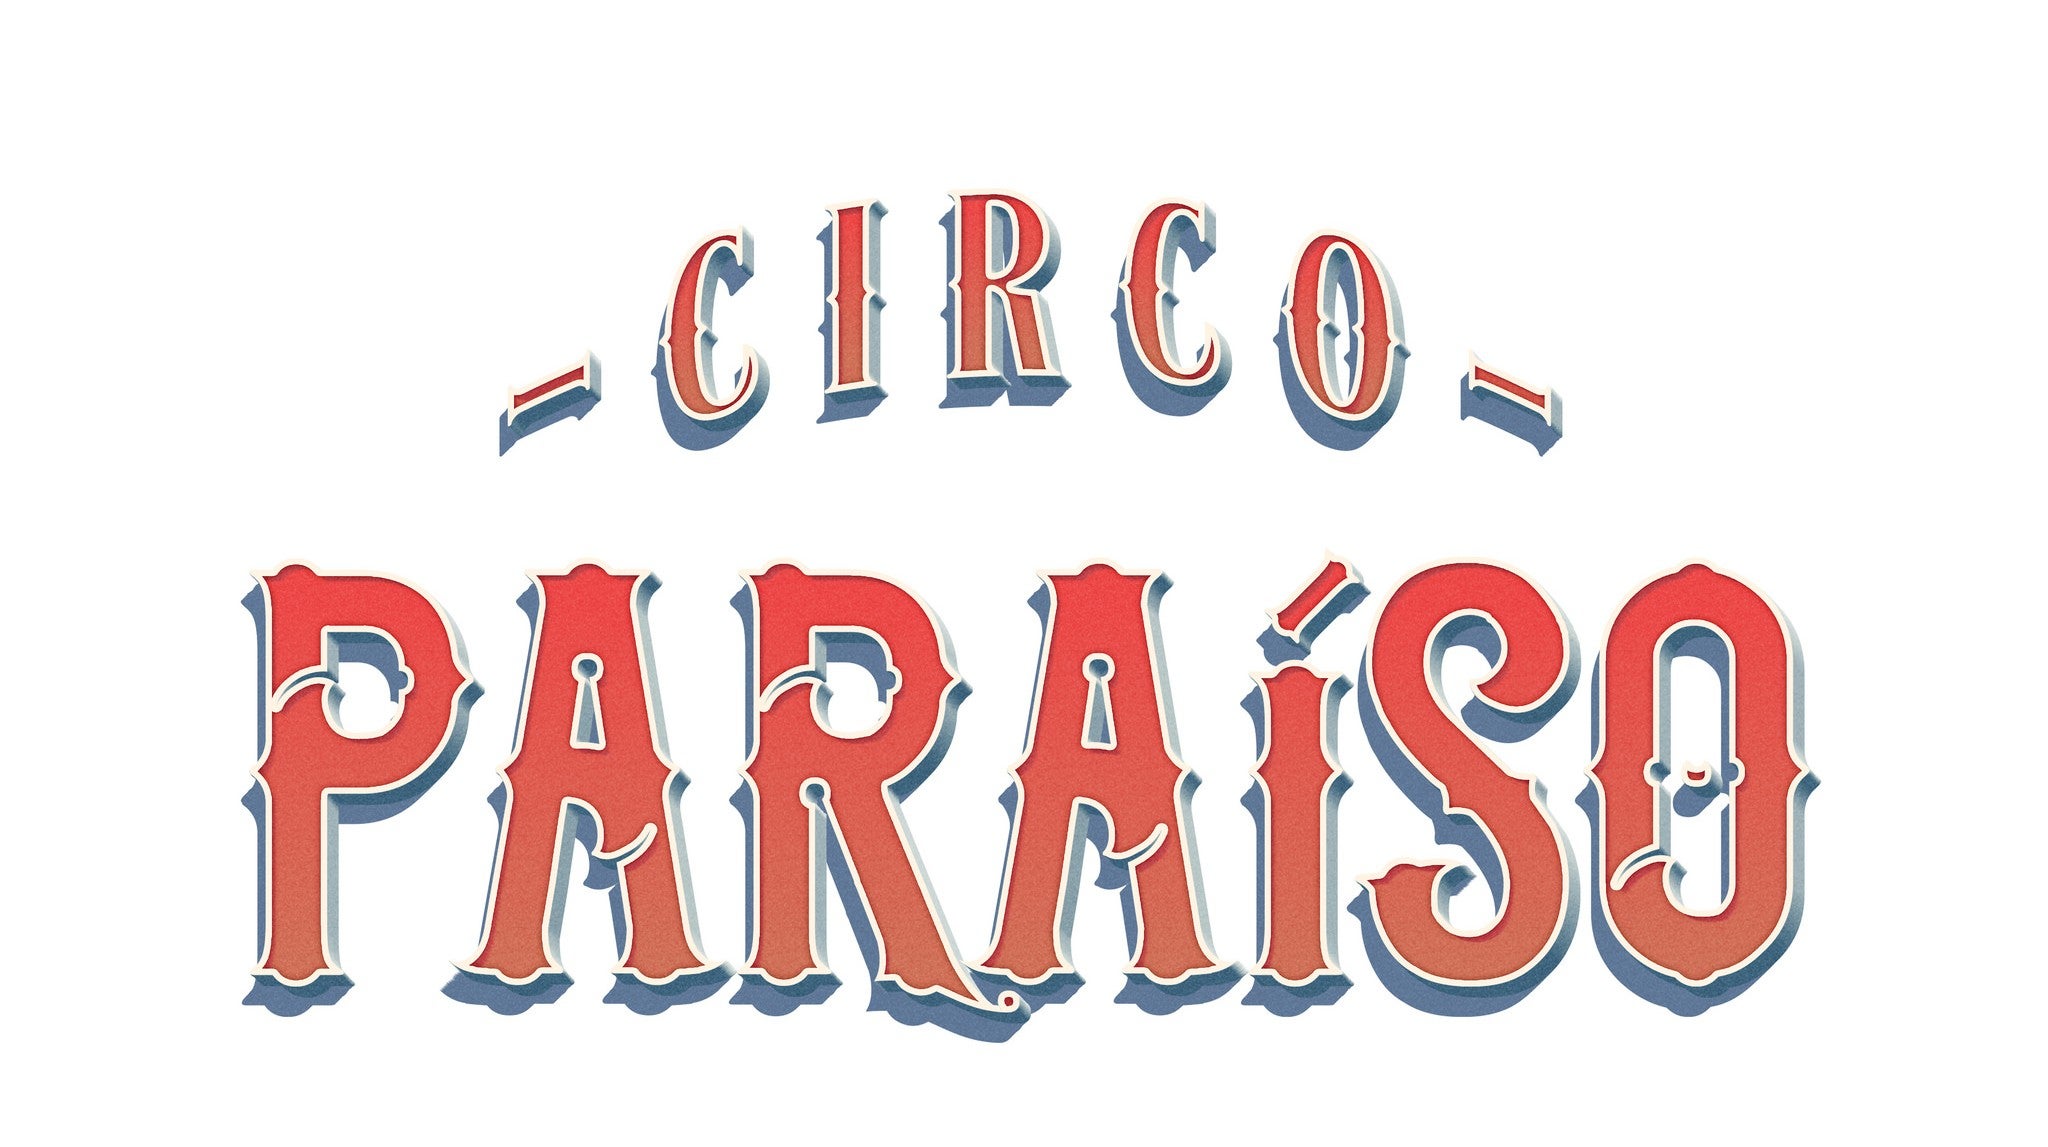 Circo Paraso